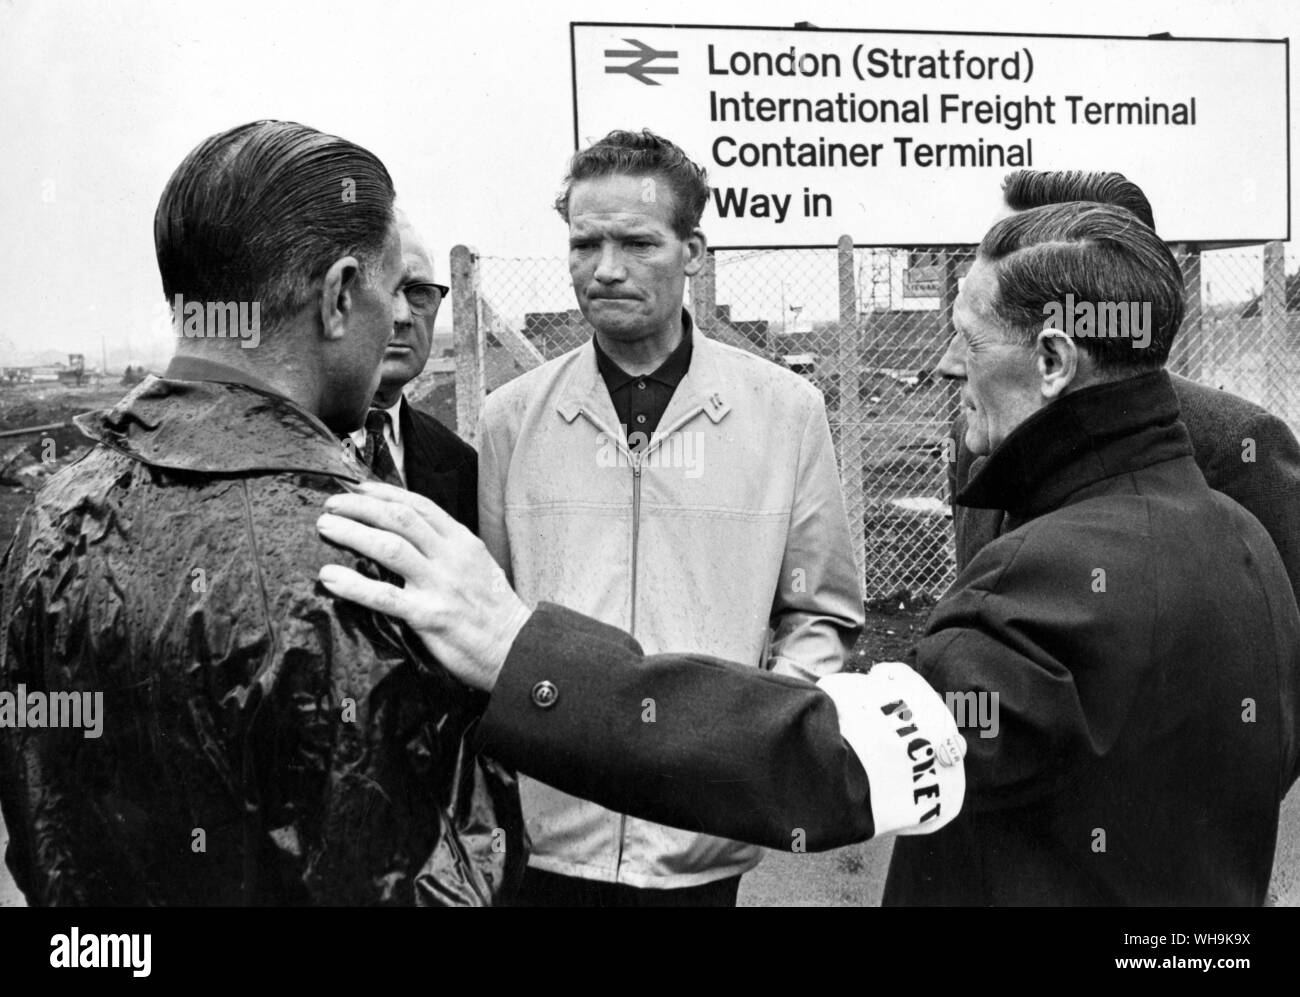 England: 23. Juni 1967: Das Stratford Railway Freight Streit. Herr Ted Bowers (Tragen von light Jockey) der Sprecher der Bahn Freightman auf Streik an der London (Stratford) Internationale Fracht Container Terminal. Stockfoto